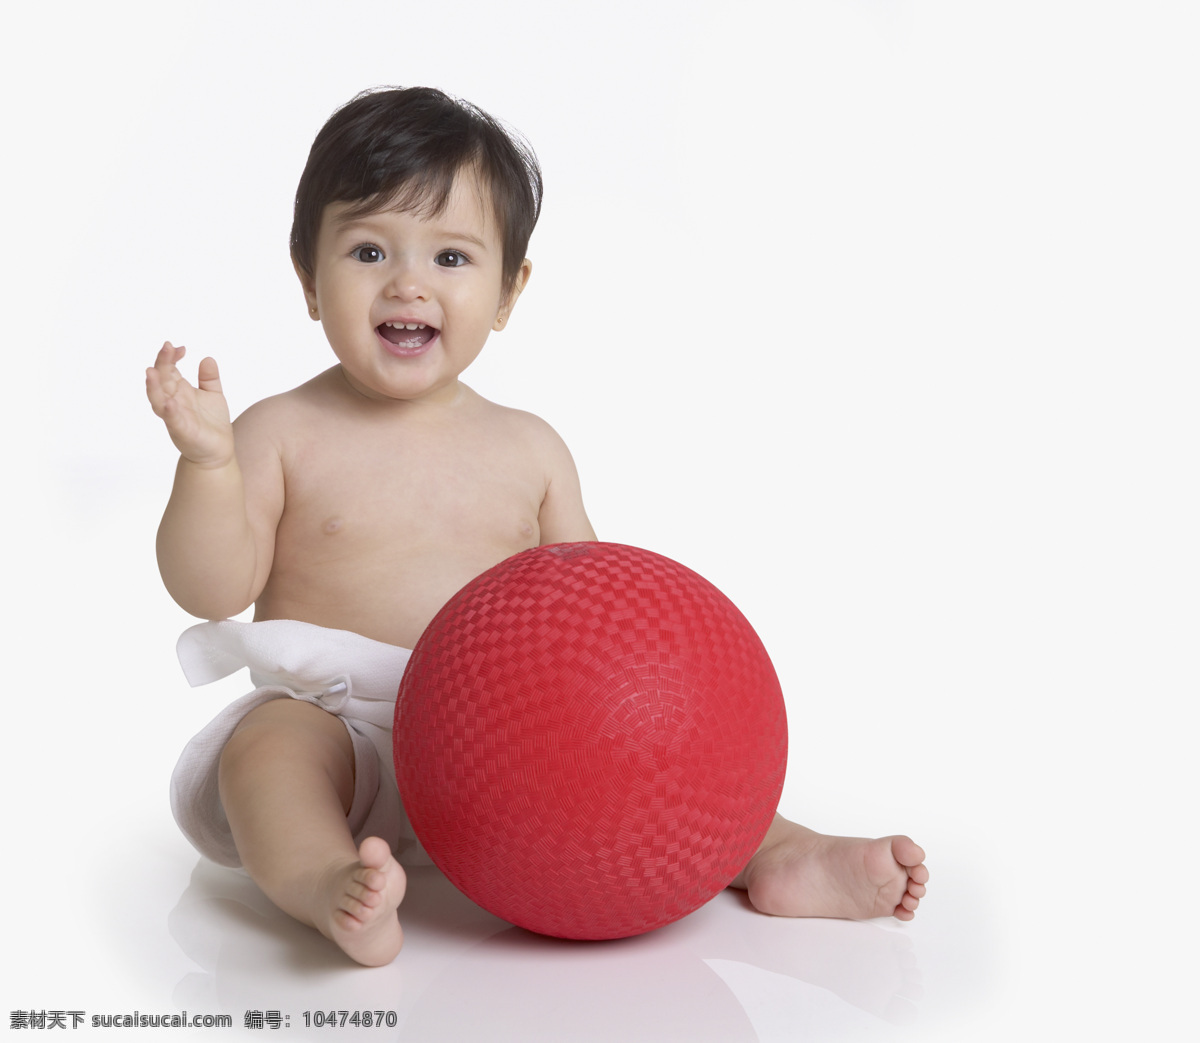 玩 皮球 小孩 婴儿 男婴 baby 玩耍 高清 红色皮球 人物 高清人物 儿童图片 人物图片